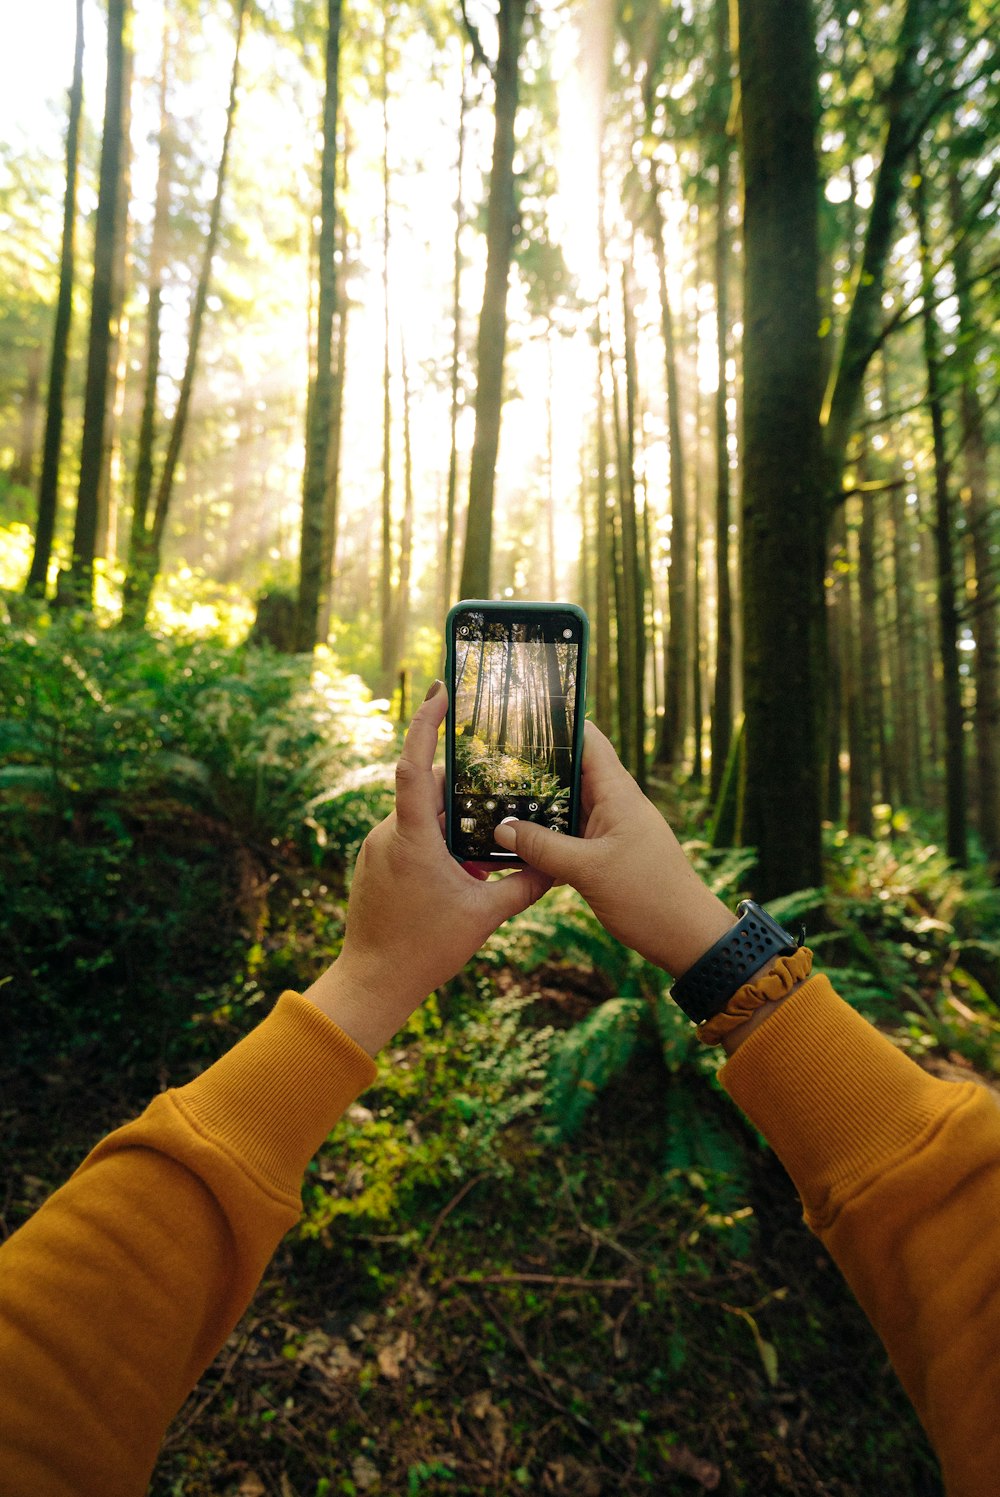 Persona sosteniendo un teléfono inteligente negro tomando fotos de árboles verdes durante el día